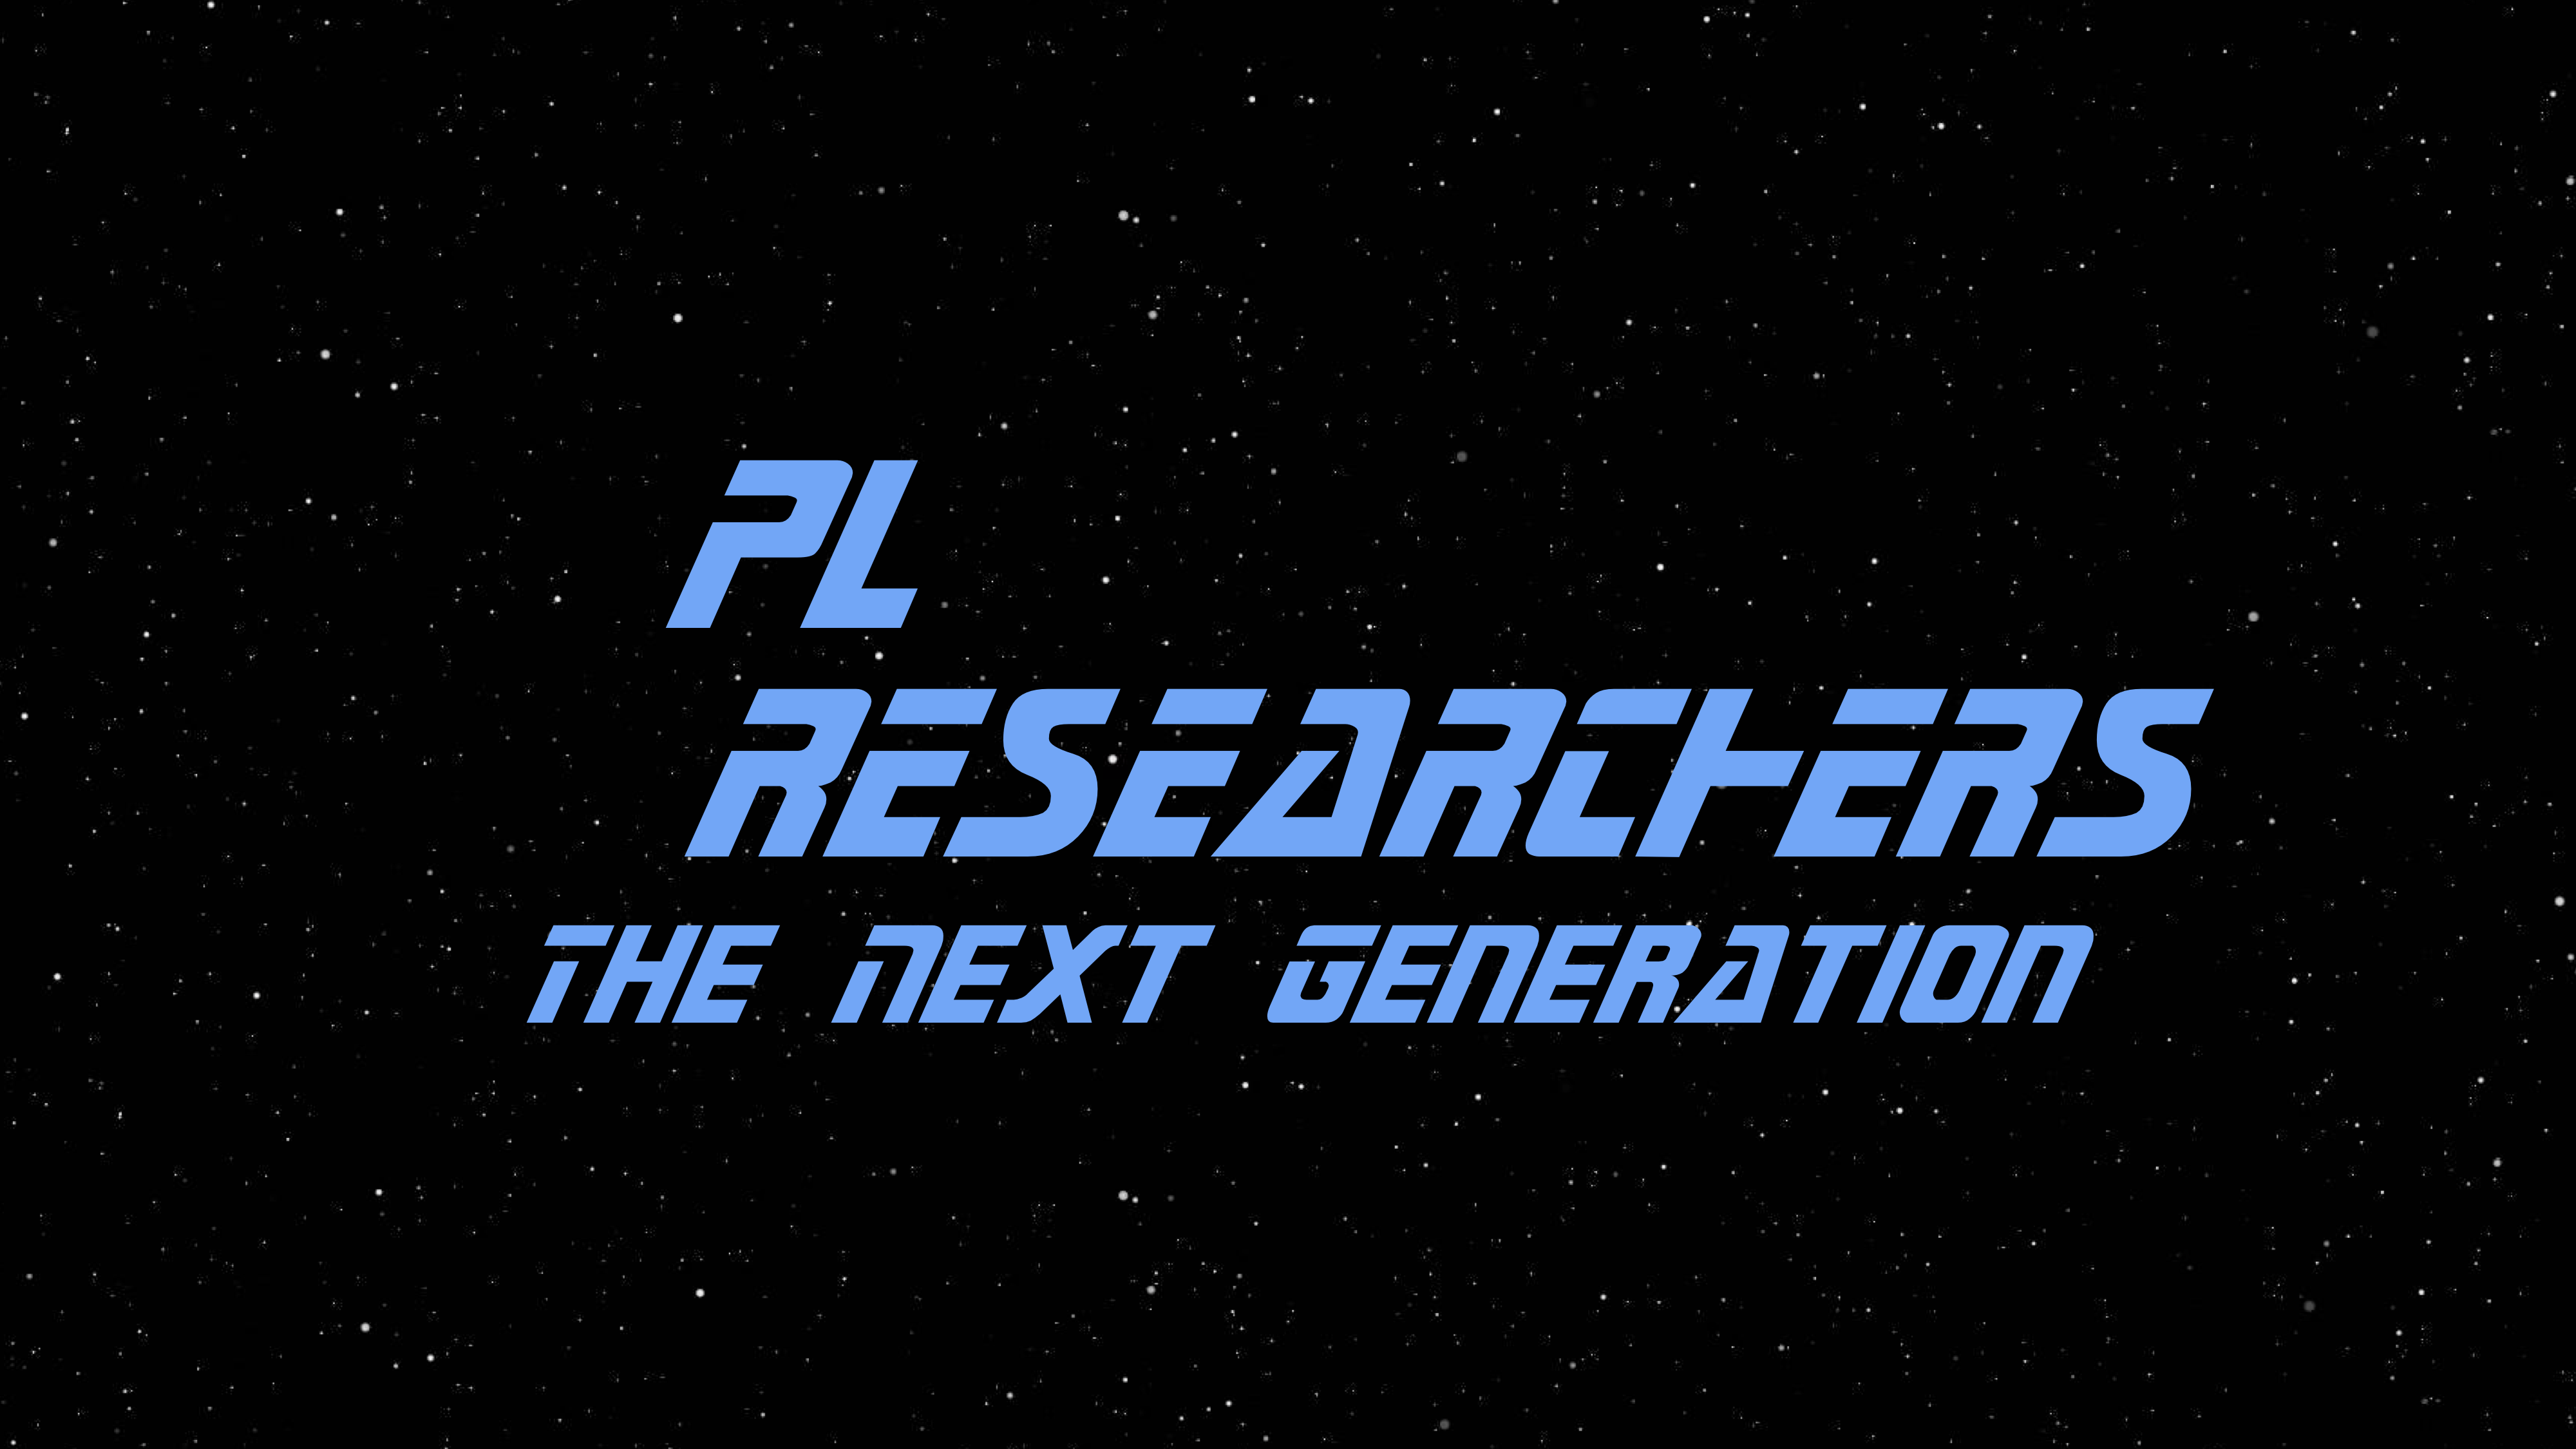 PL Researchers: The Next Generation